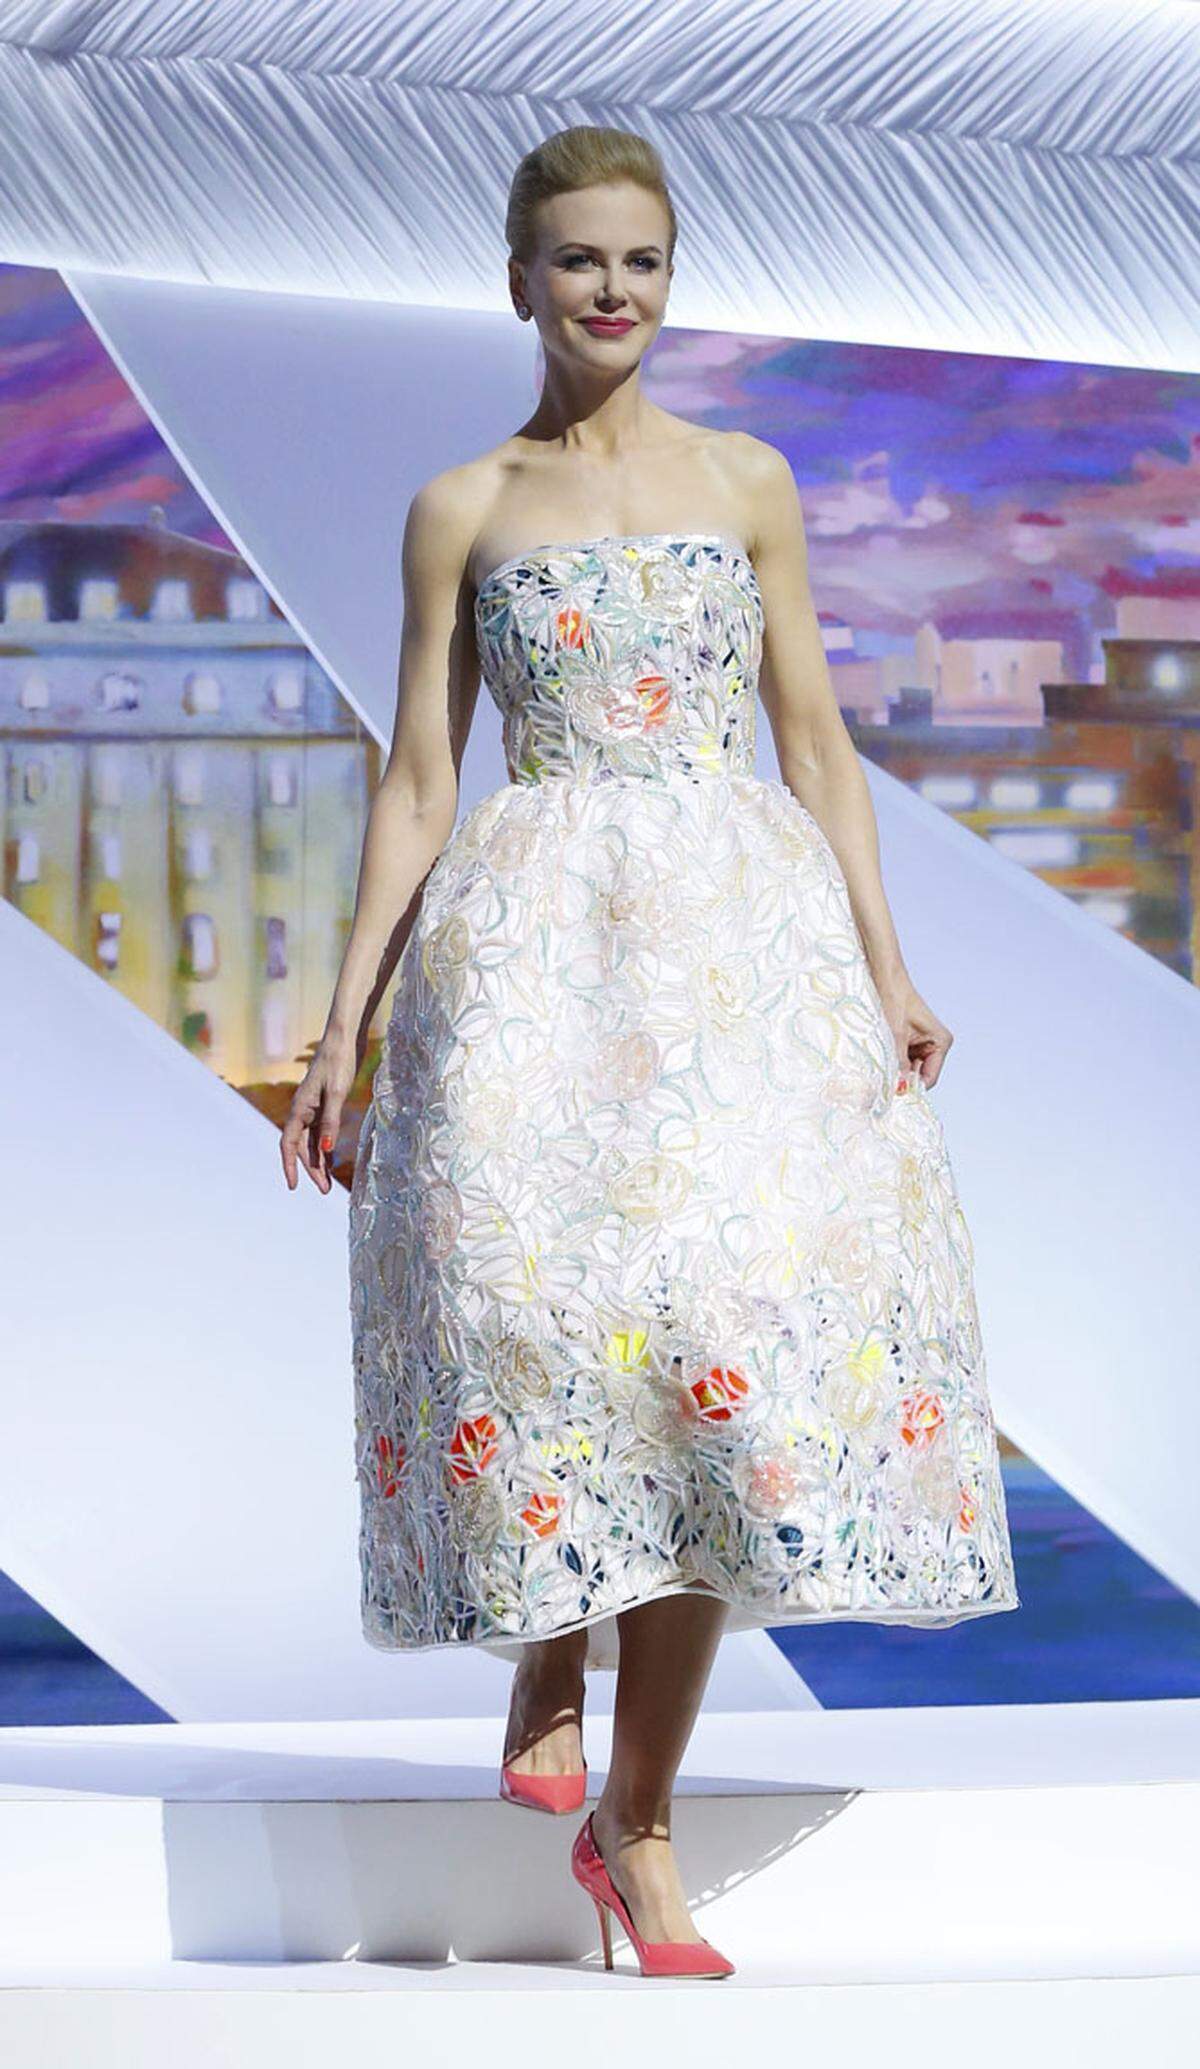 Ebenfalls für ein Kleid von Christian Dior entschied sich Nicole Kidman bei der Filmvorführung.